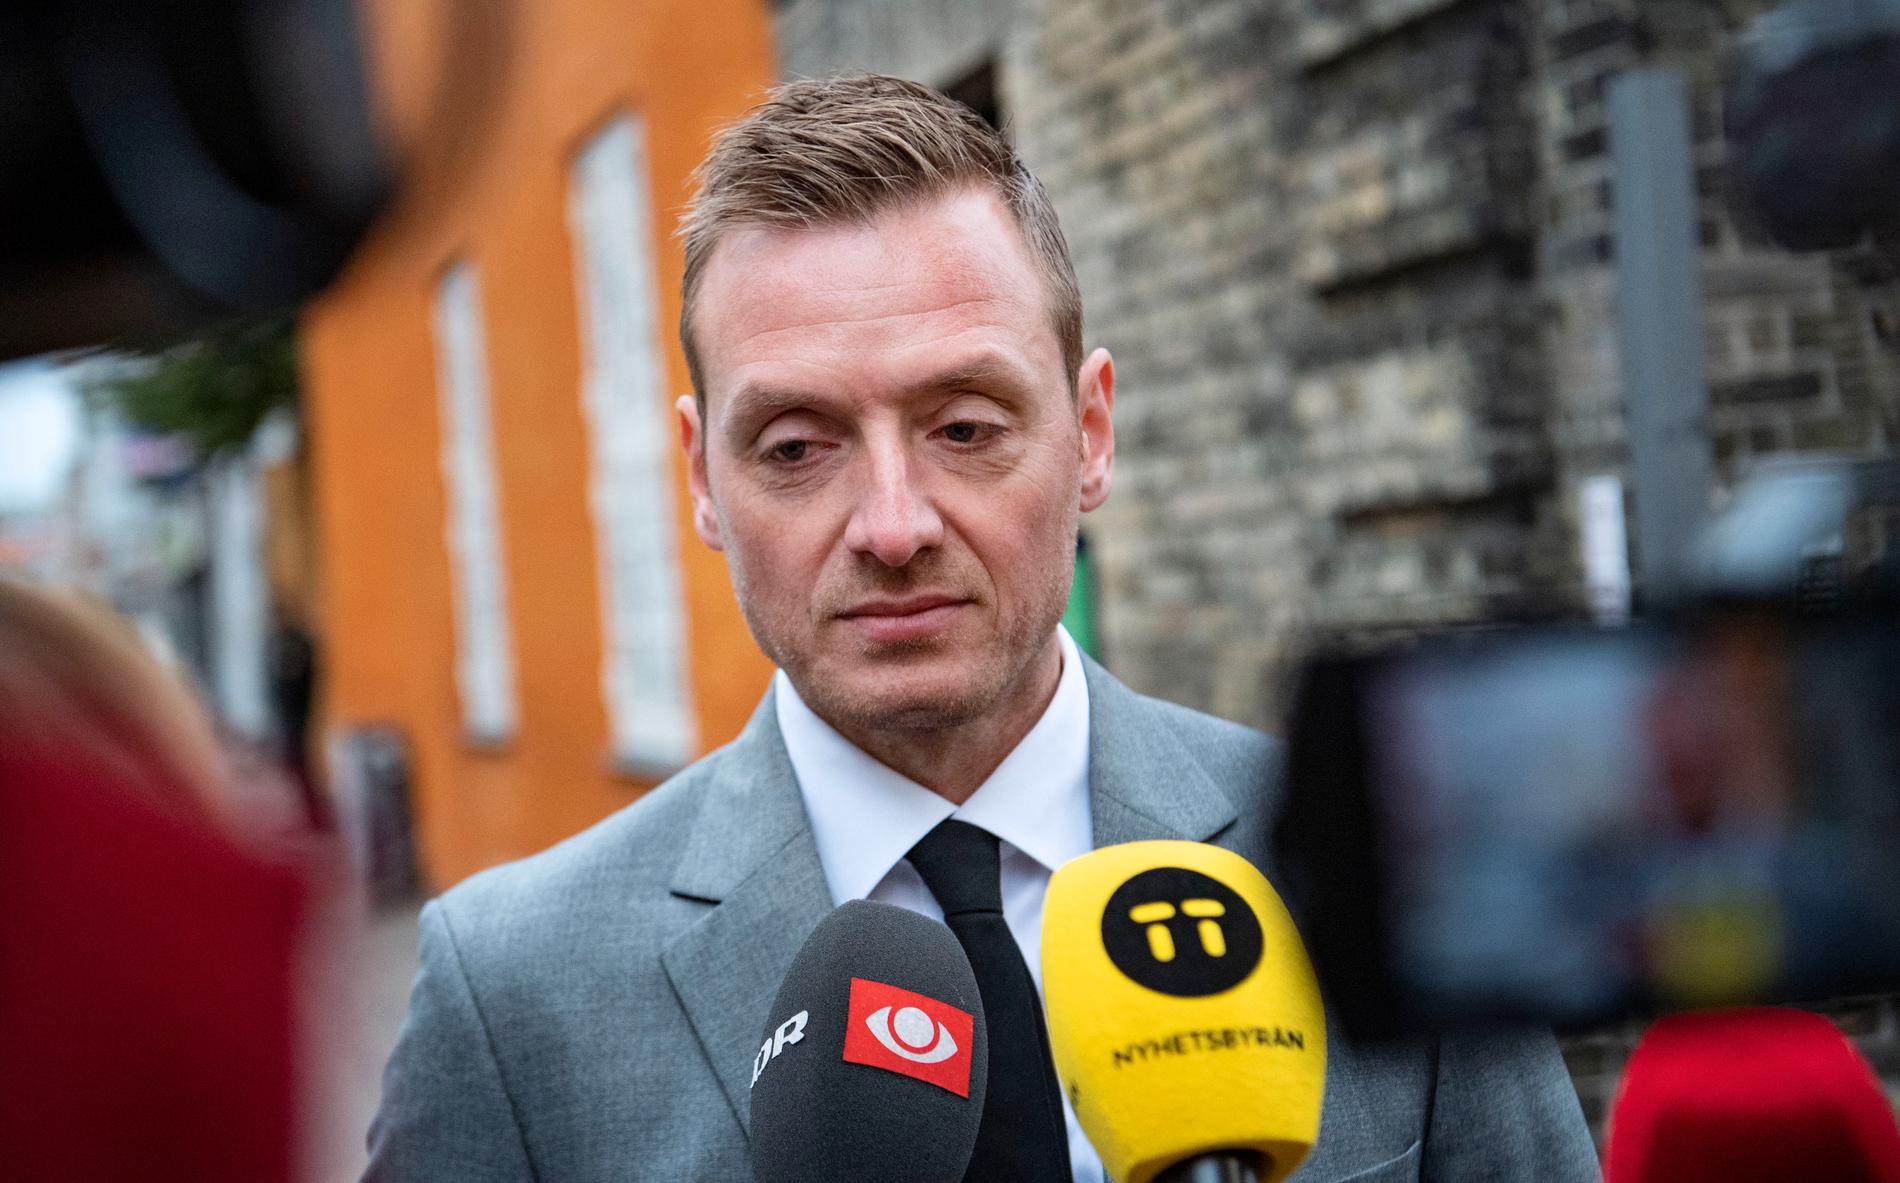 Åklagaren Kristian Kirk Petersen anländer till den danska hovrätten Østre landsret i Köpenhamn.